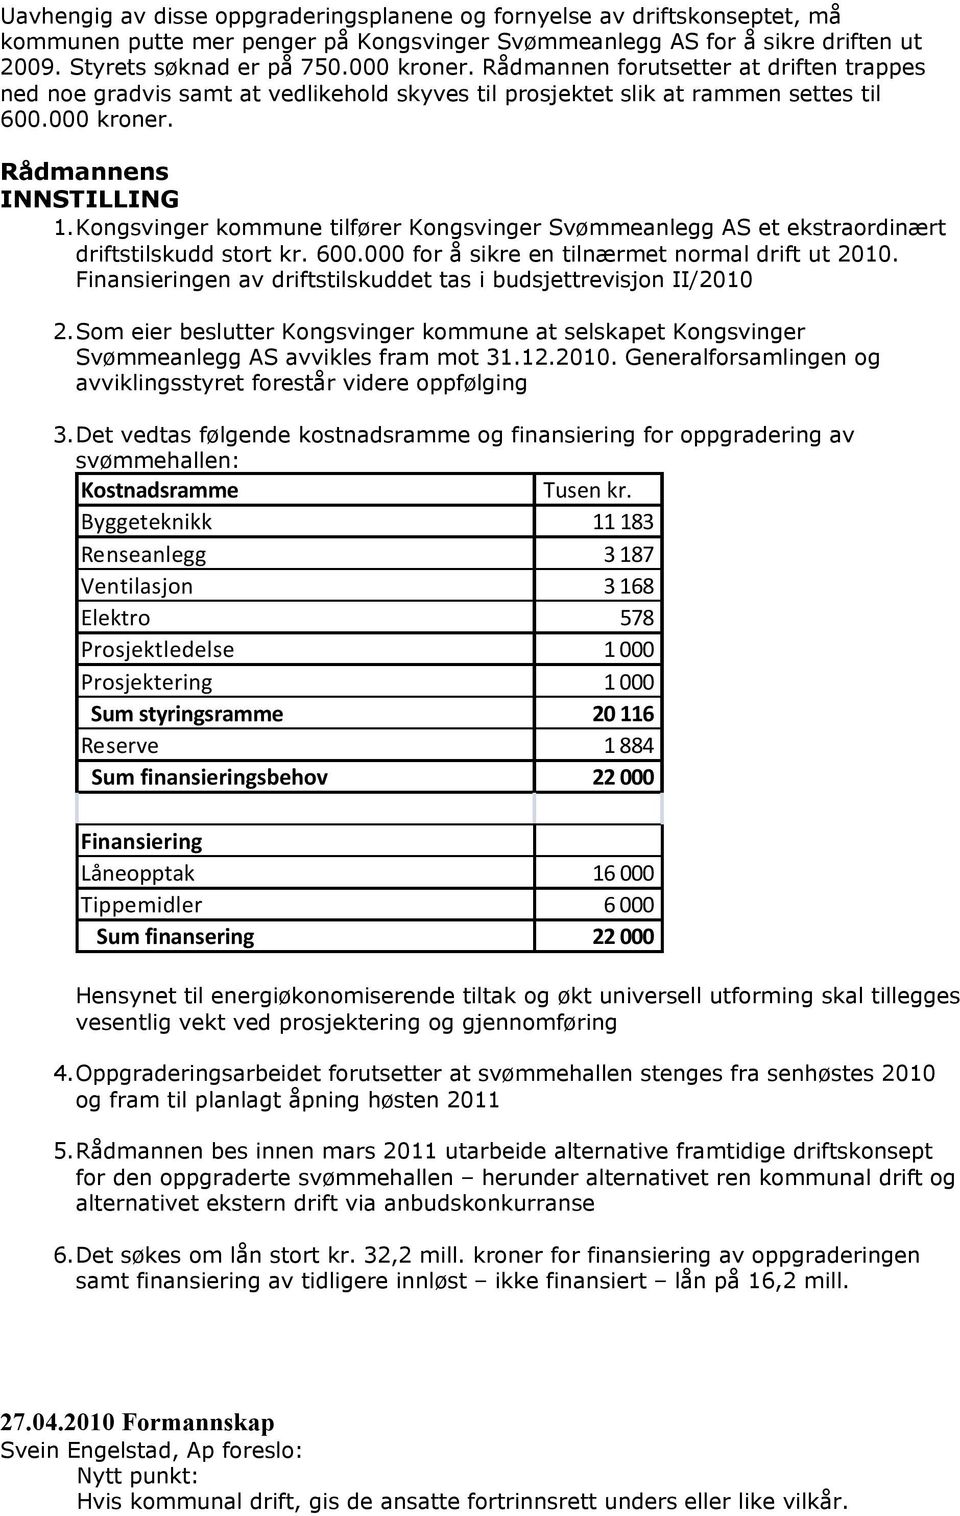 Kongsvinger kommune tilfører Kongsvinger Svømmeanlegg AS et ekstraordinært driftstilskudd stort kr. 600.000 for å sikre en tilnærmet normal drift ut 2010.